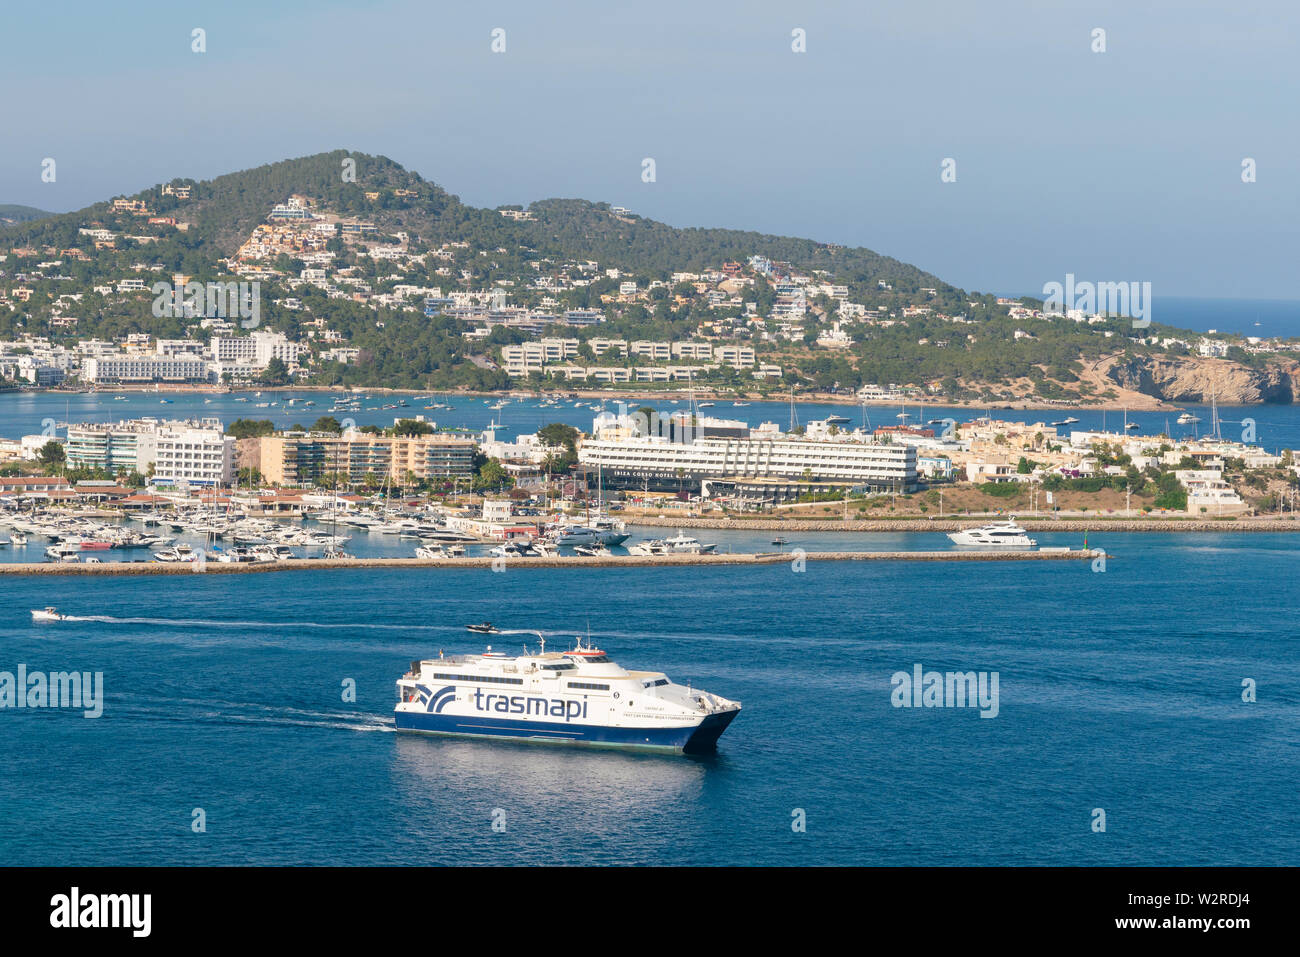 22.Juni 2019 - Ibiza, Spanien. Schnelles Auto Fähre Trasmapi Ausfahrt aus dem Hafen von Eivissa für Insel Formentera. Stockfoto